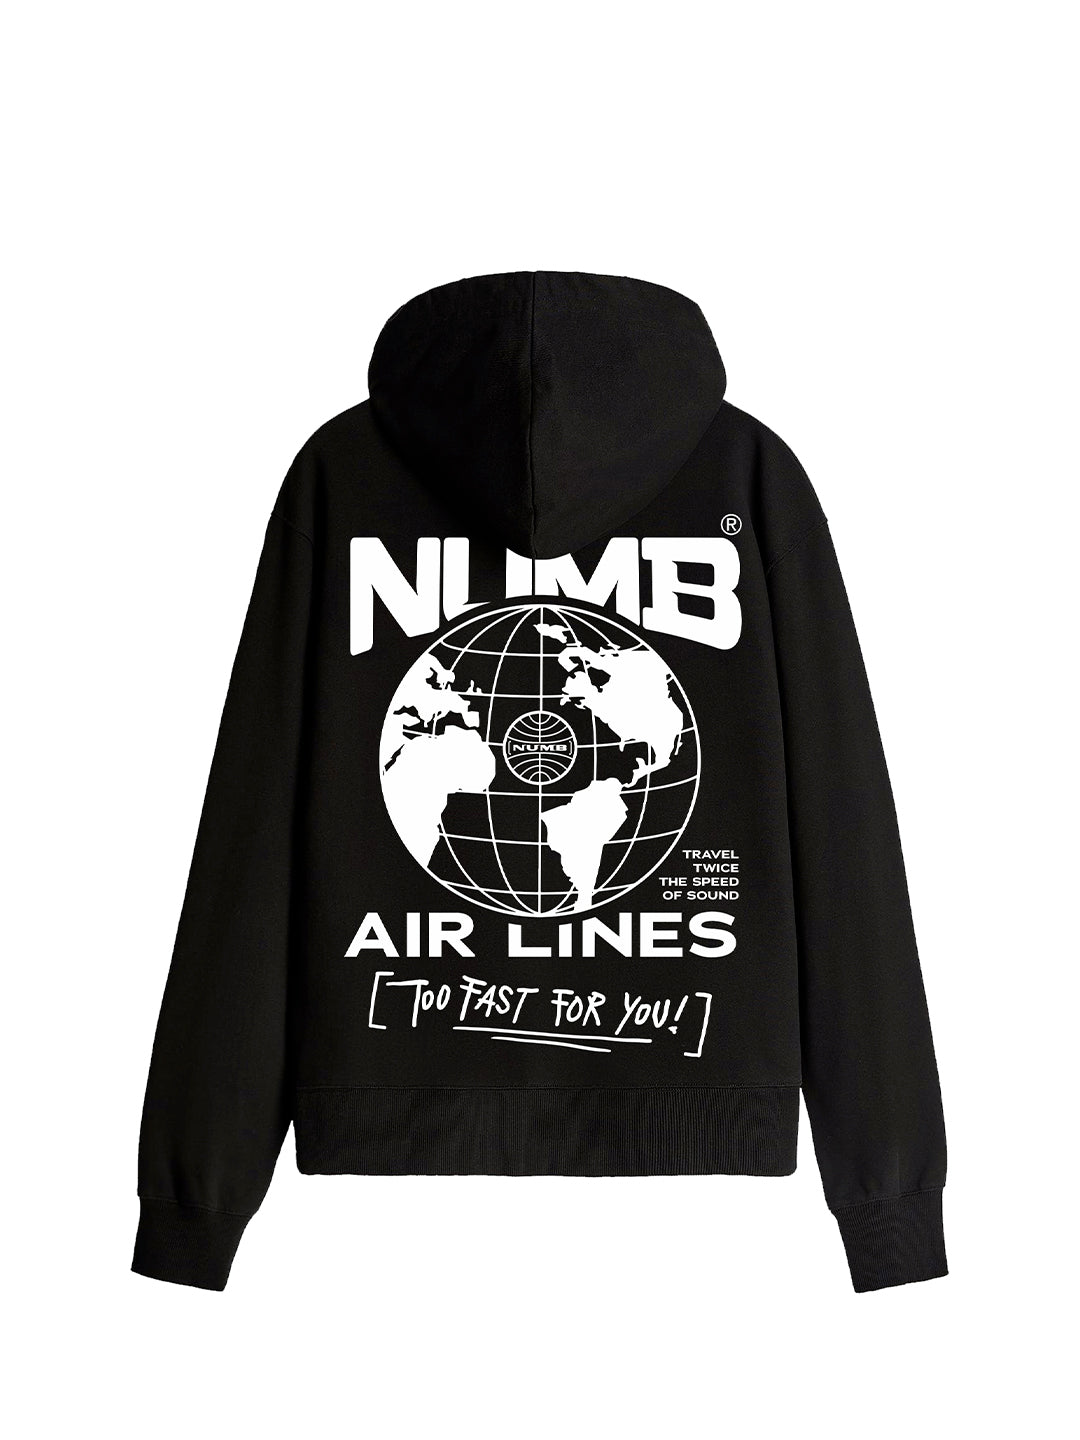 HOODIE 'Numb Air Lines' Black